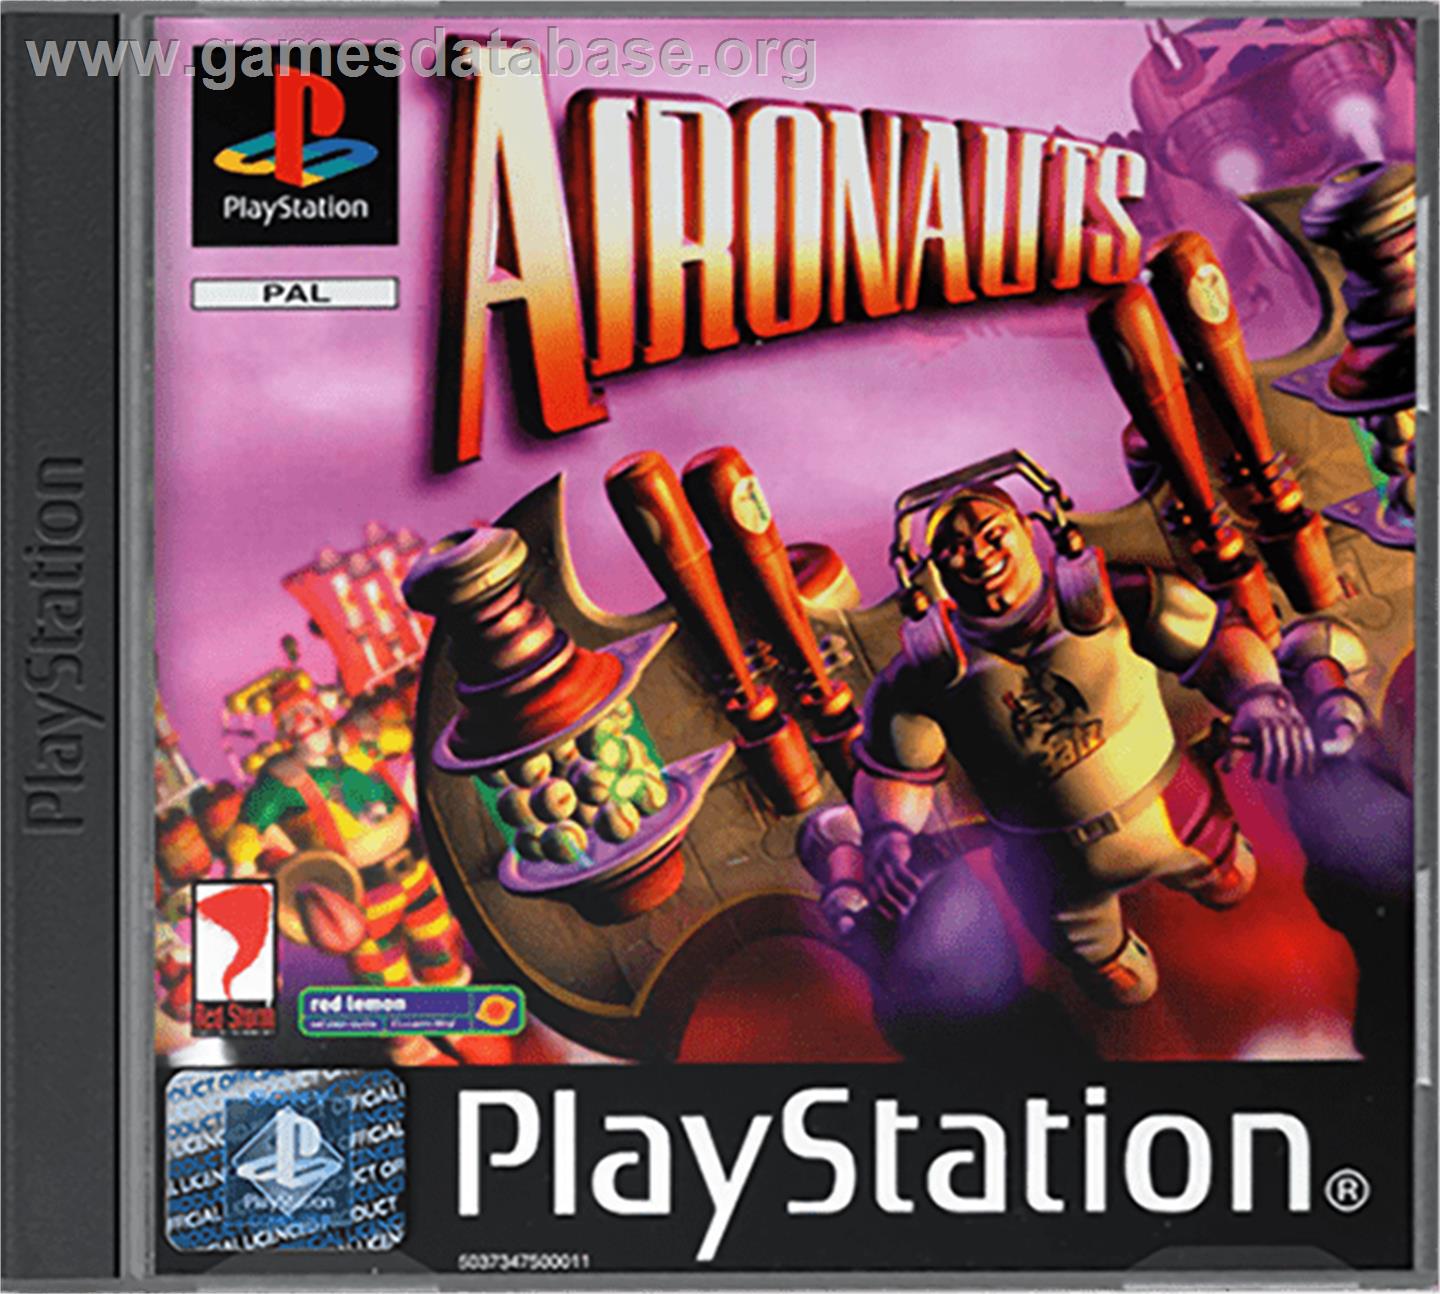 Aironauts - Sony Playstation - Artwork - Box